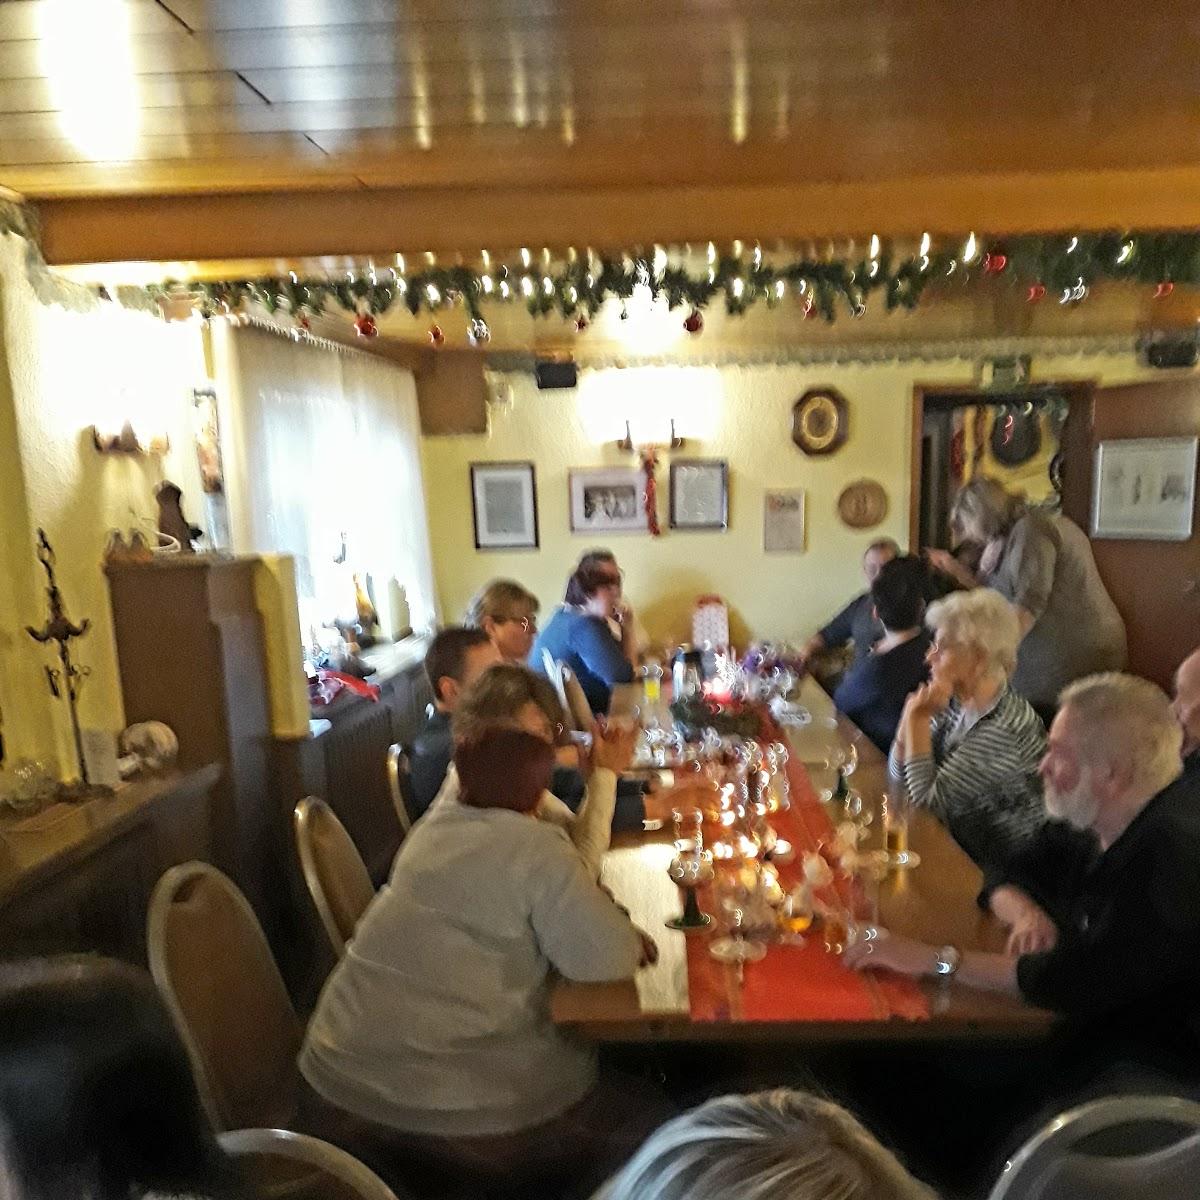 Restaurant "Zum alten Stallberg" in Siegburg